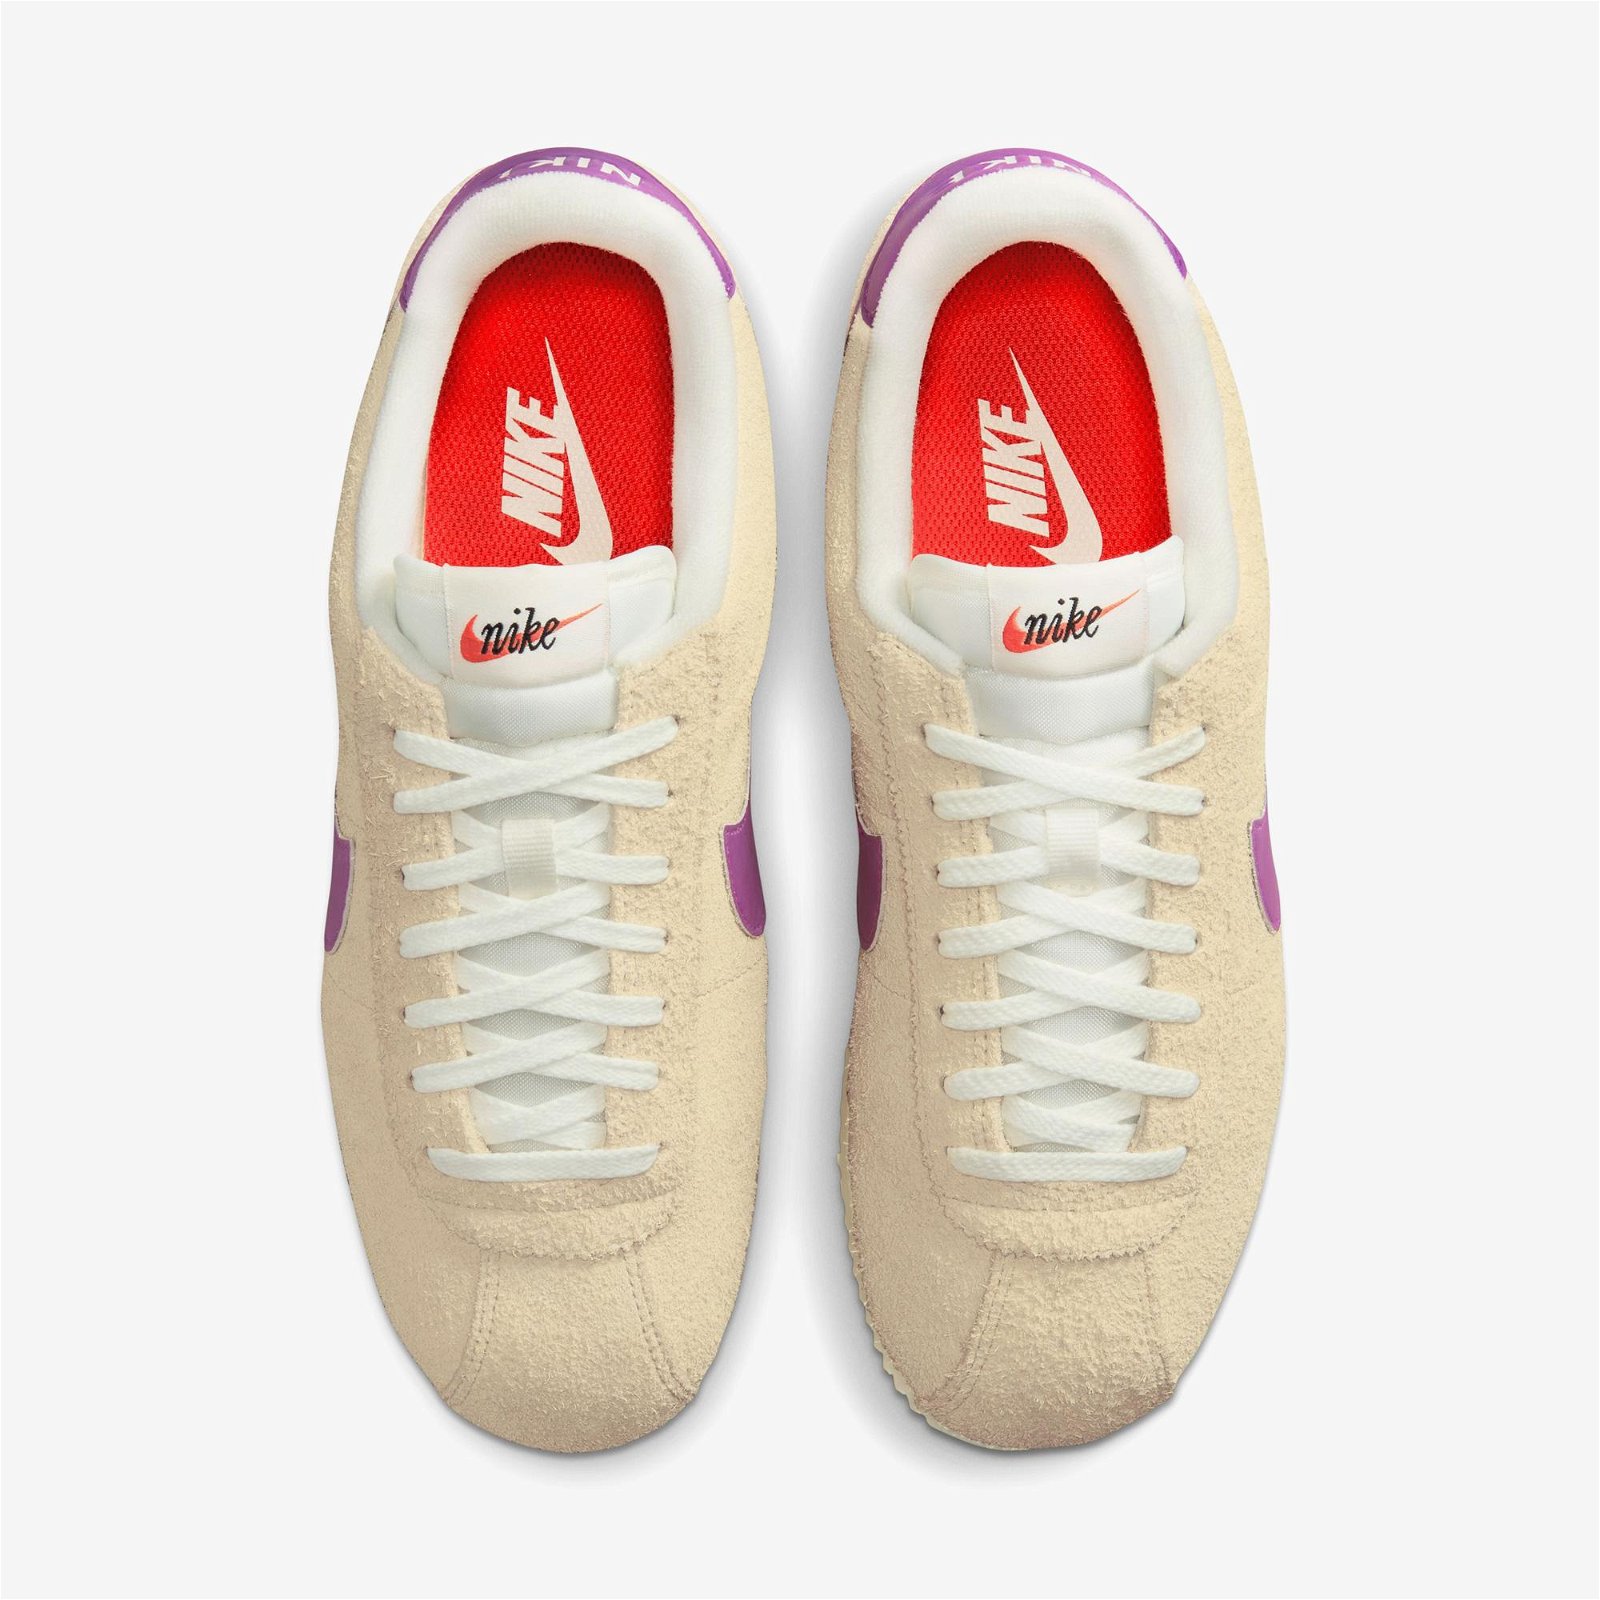 Nike Cortez Vintage Kadın Krem Rengi Spor Ayakkabı